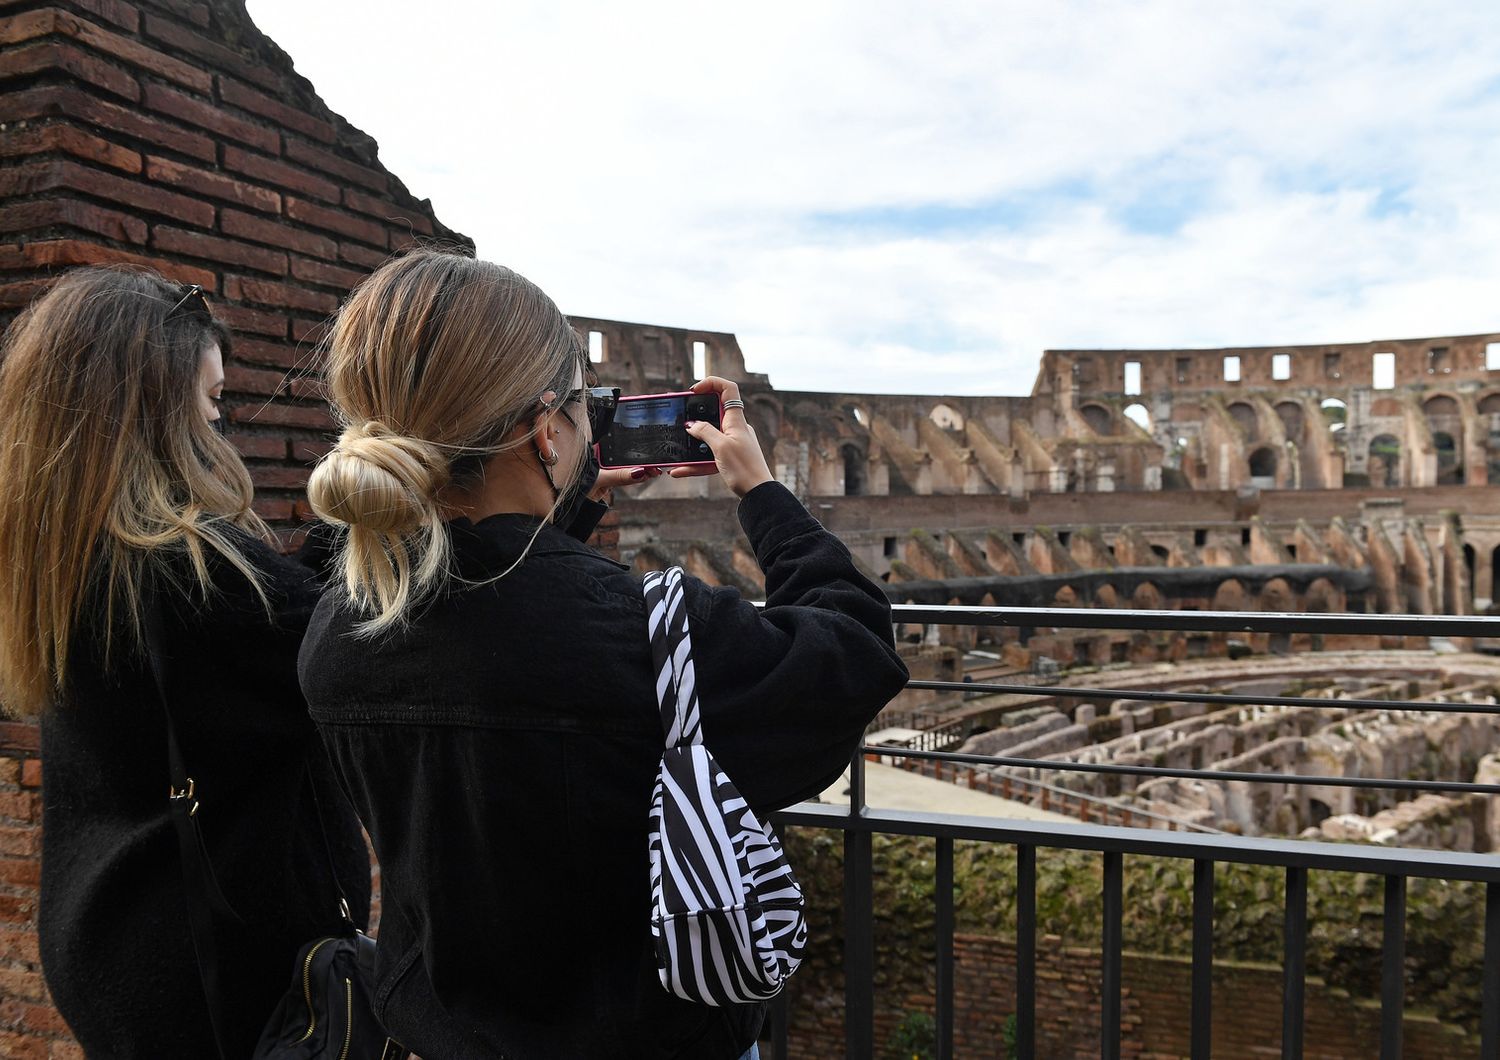 Il primo febbraio 2021 il Parco Archeologico del Colosseo riapre al pubblico dopo il lockdown durato 87 giorni per la pandemia Covid-19